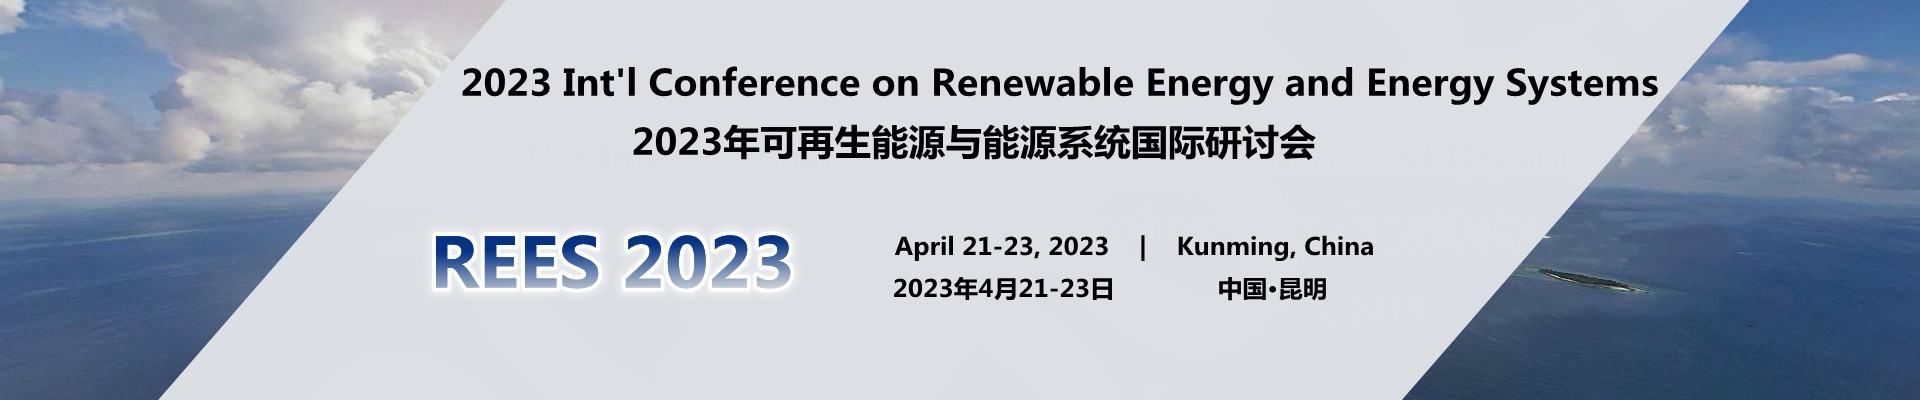 2023年可再生能源与能源系统国际研讨会(REES 2023)